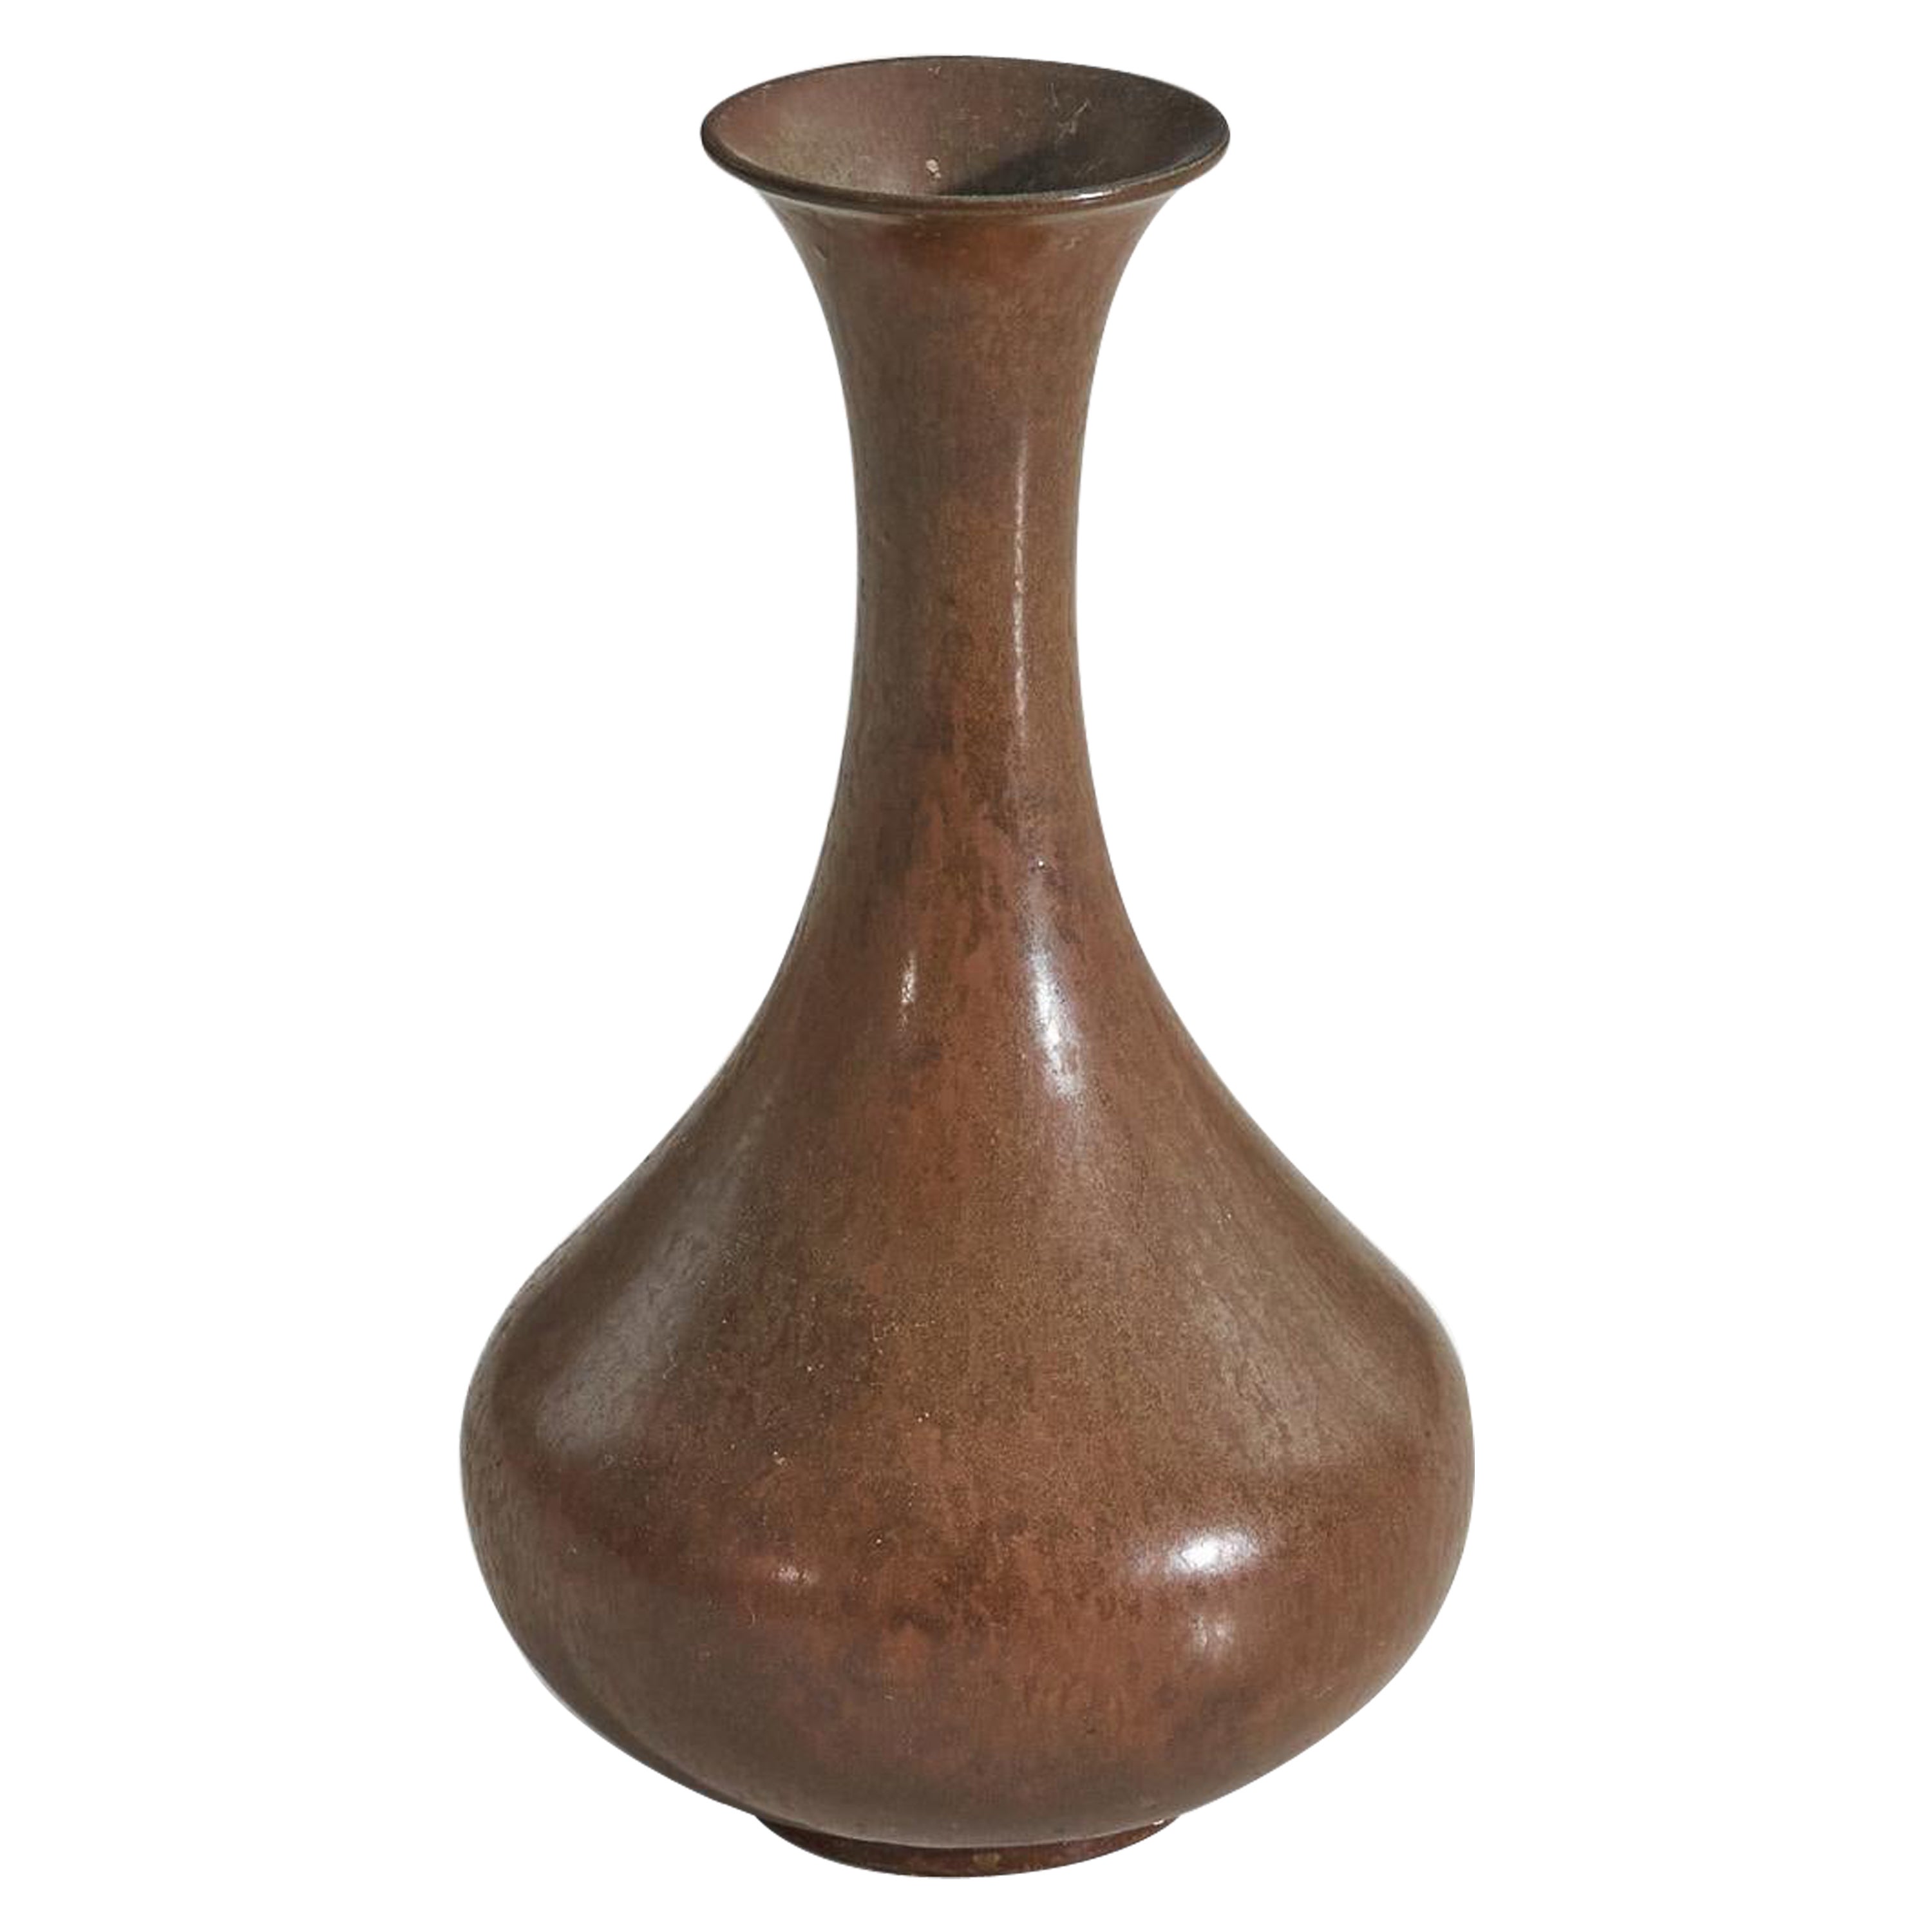 Vase modèle « ARA » de Gunnar Nylund, en grès verni brun, Rrstand, Suède, années 1950